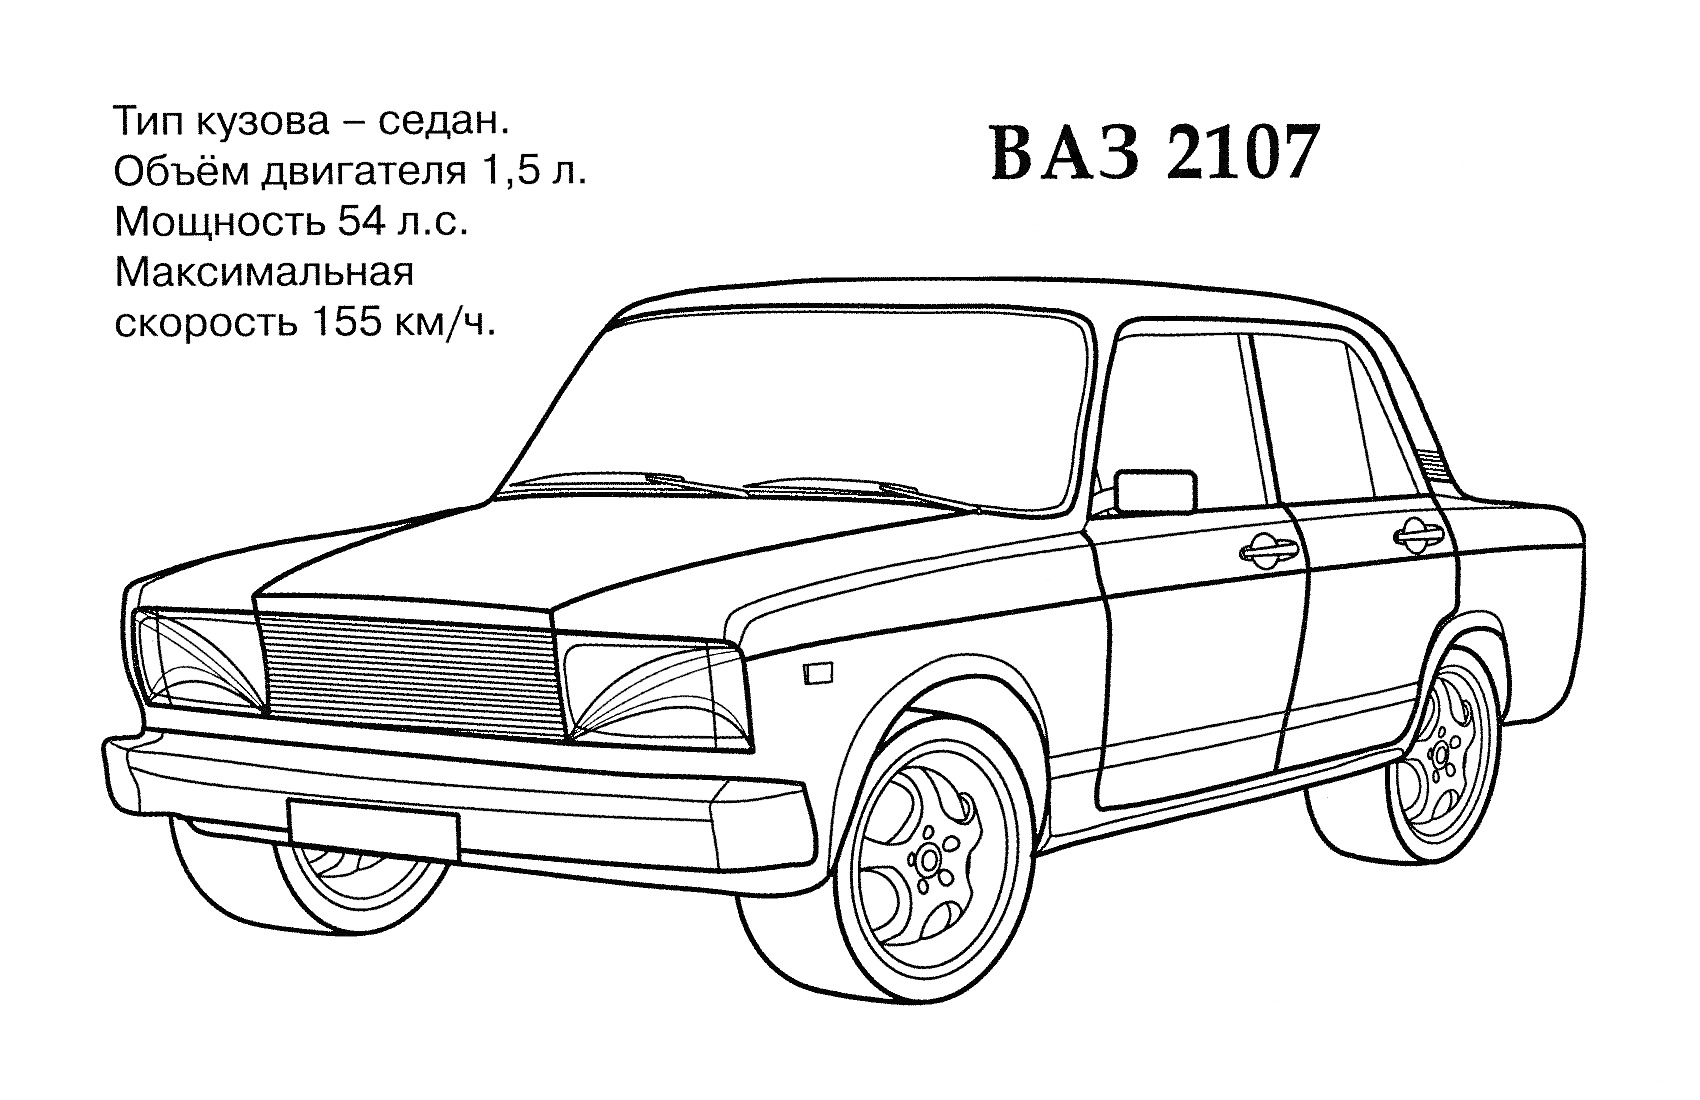 Раскраска Автомобиль ВАЗ 2107 с характеристиками: тип кузова - седан, объем двигателя 1,5 л., мощность 54 л.с., максимальная скорость 155 км/ч.